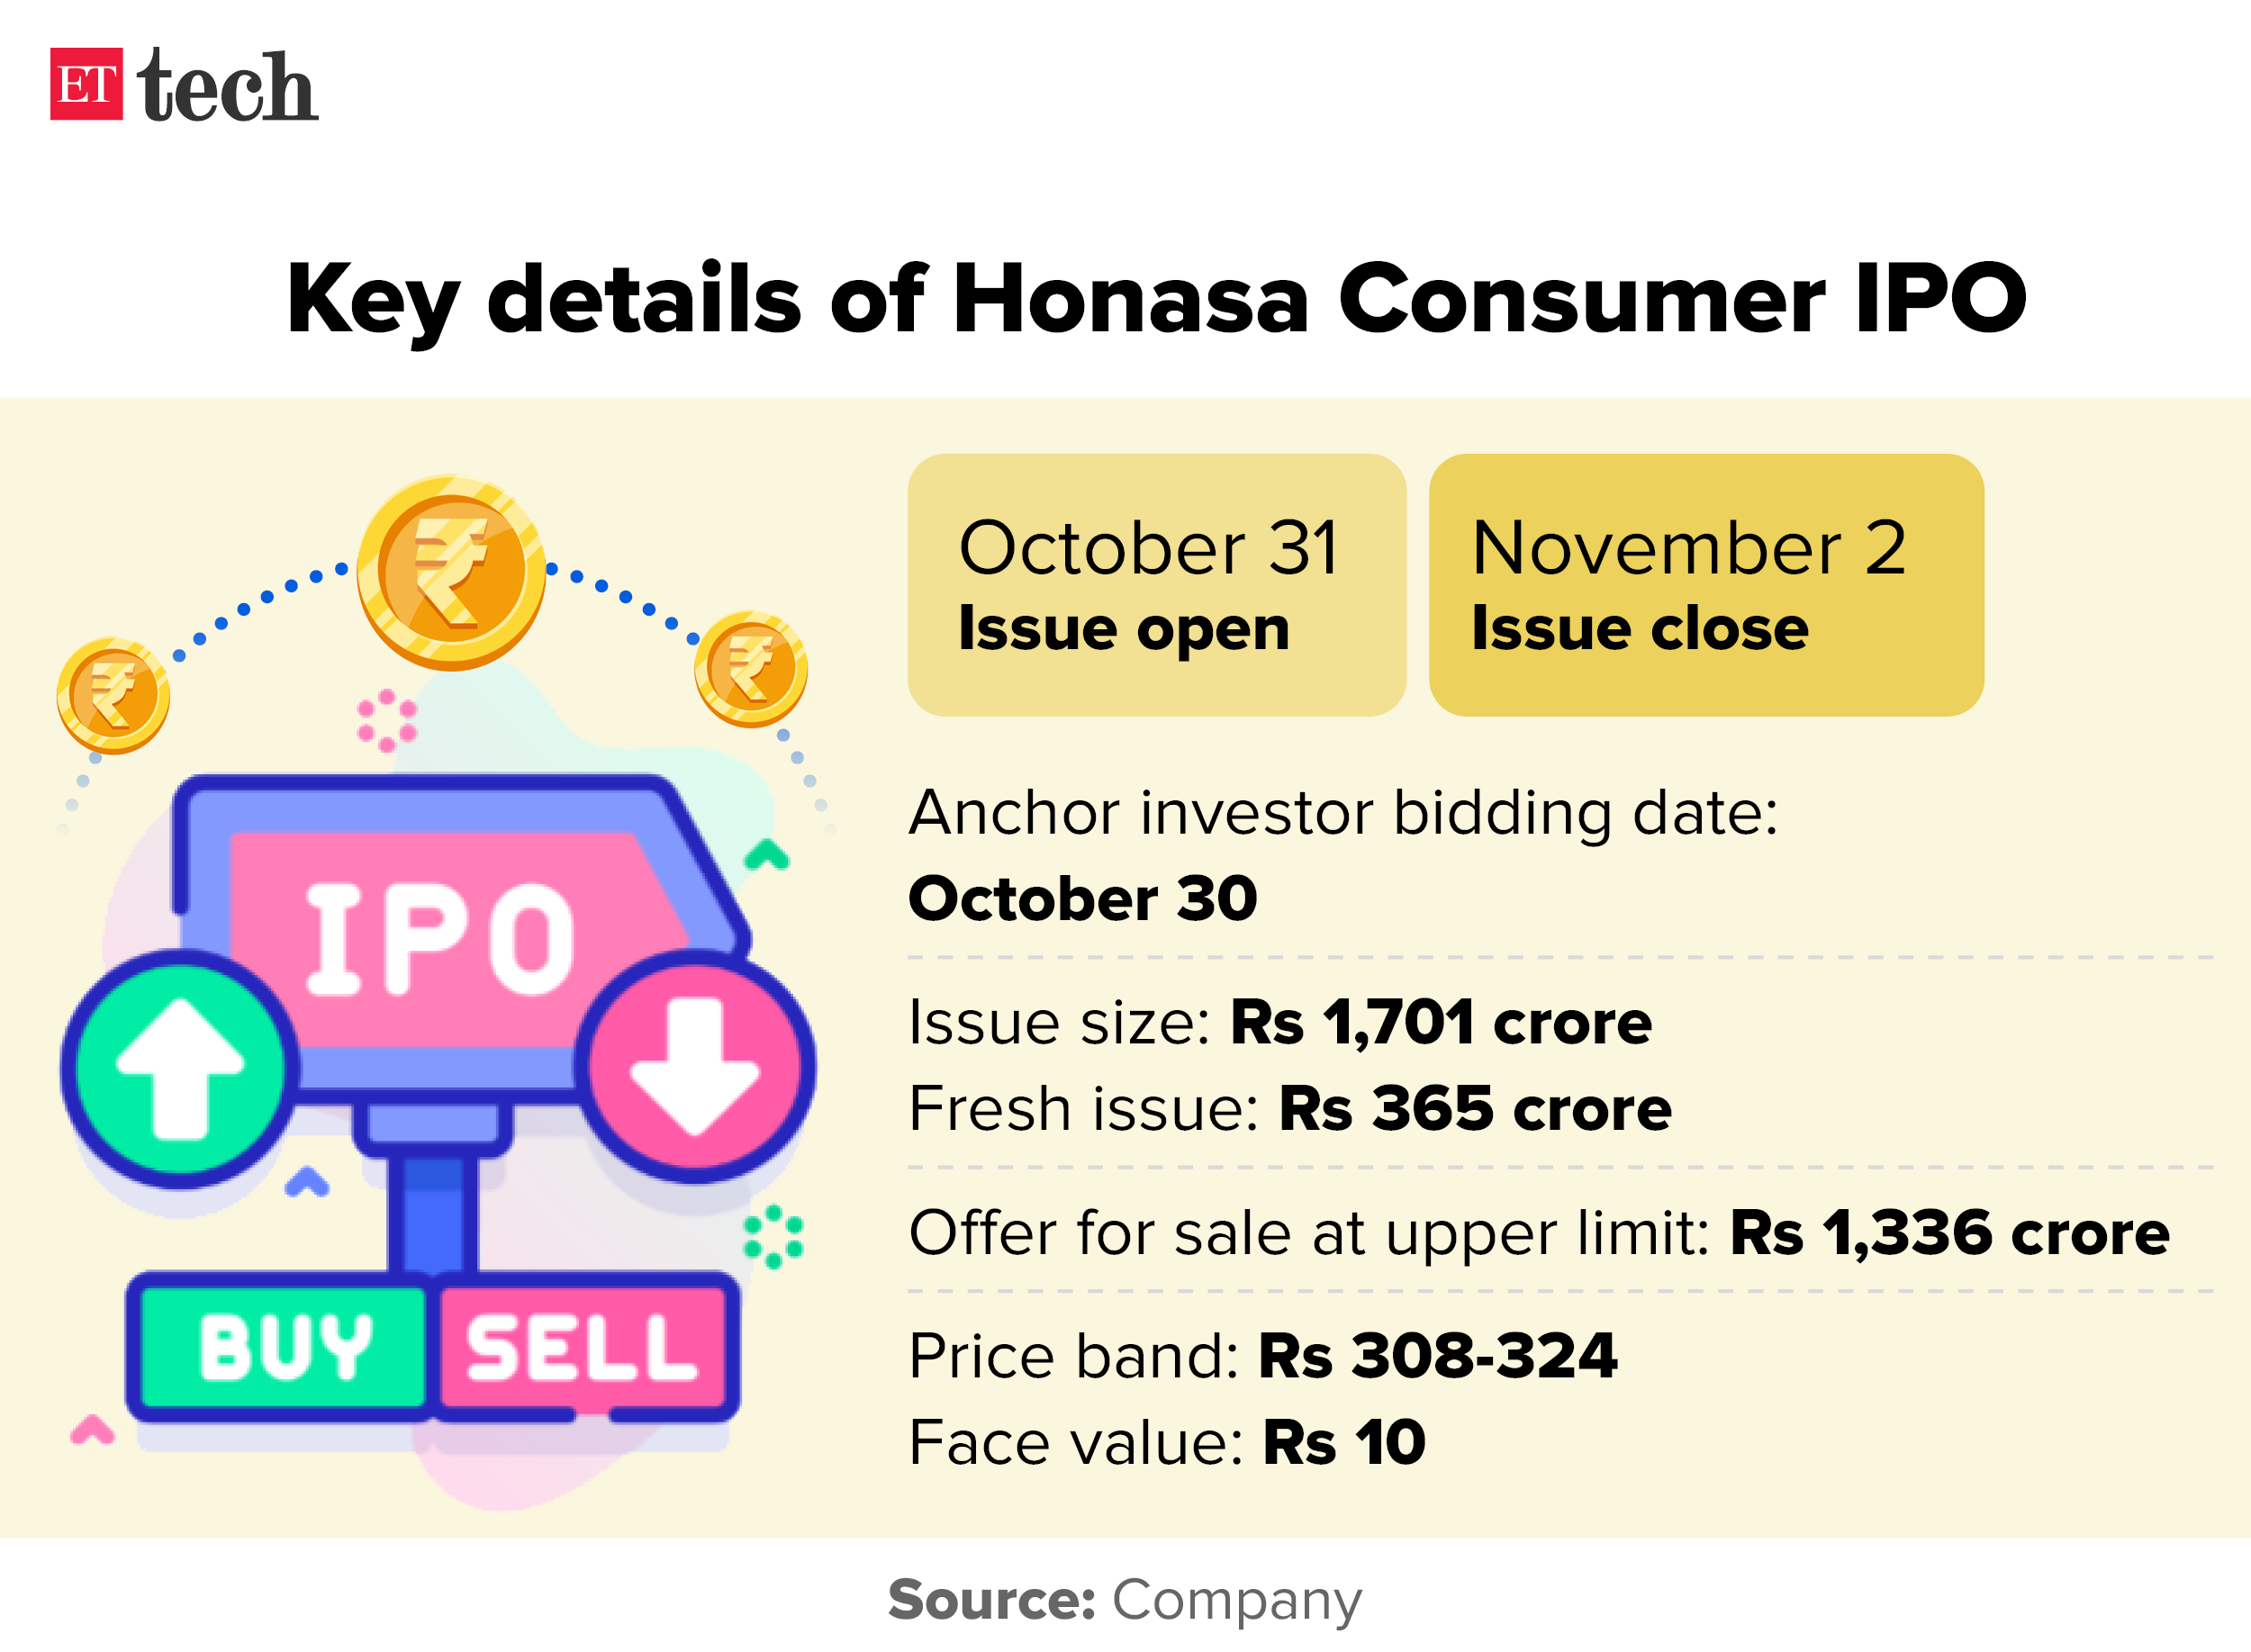 Key details of Honasa Consumer IPO